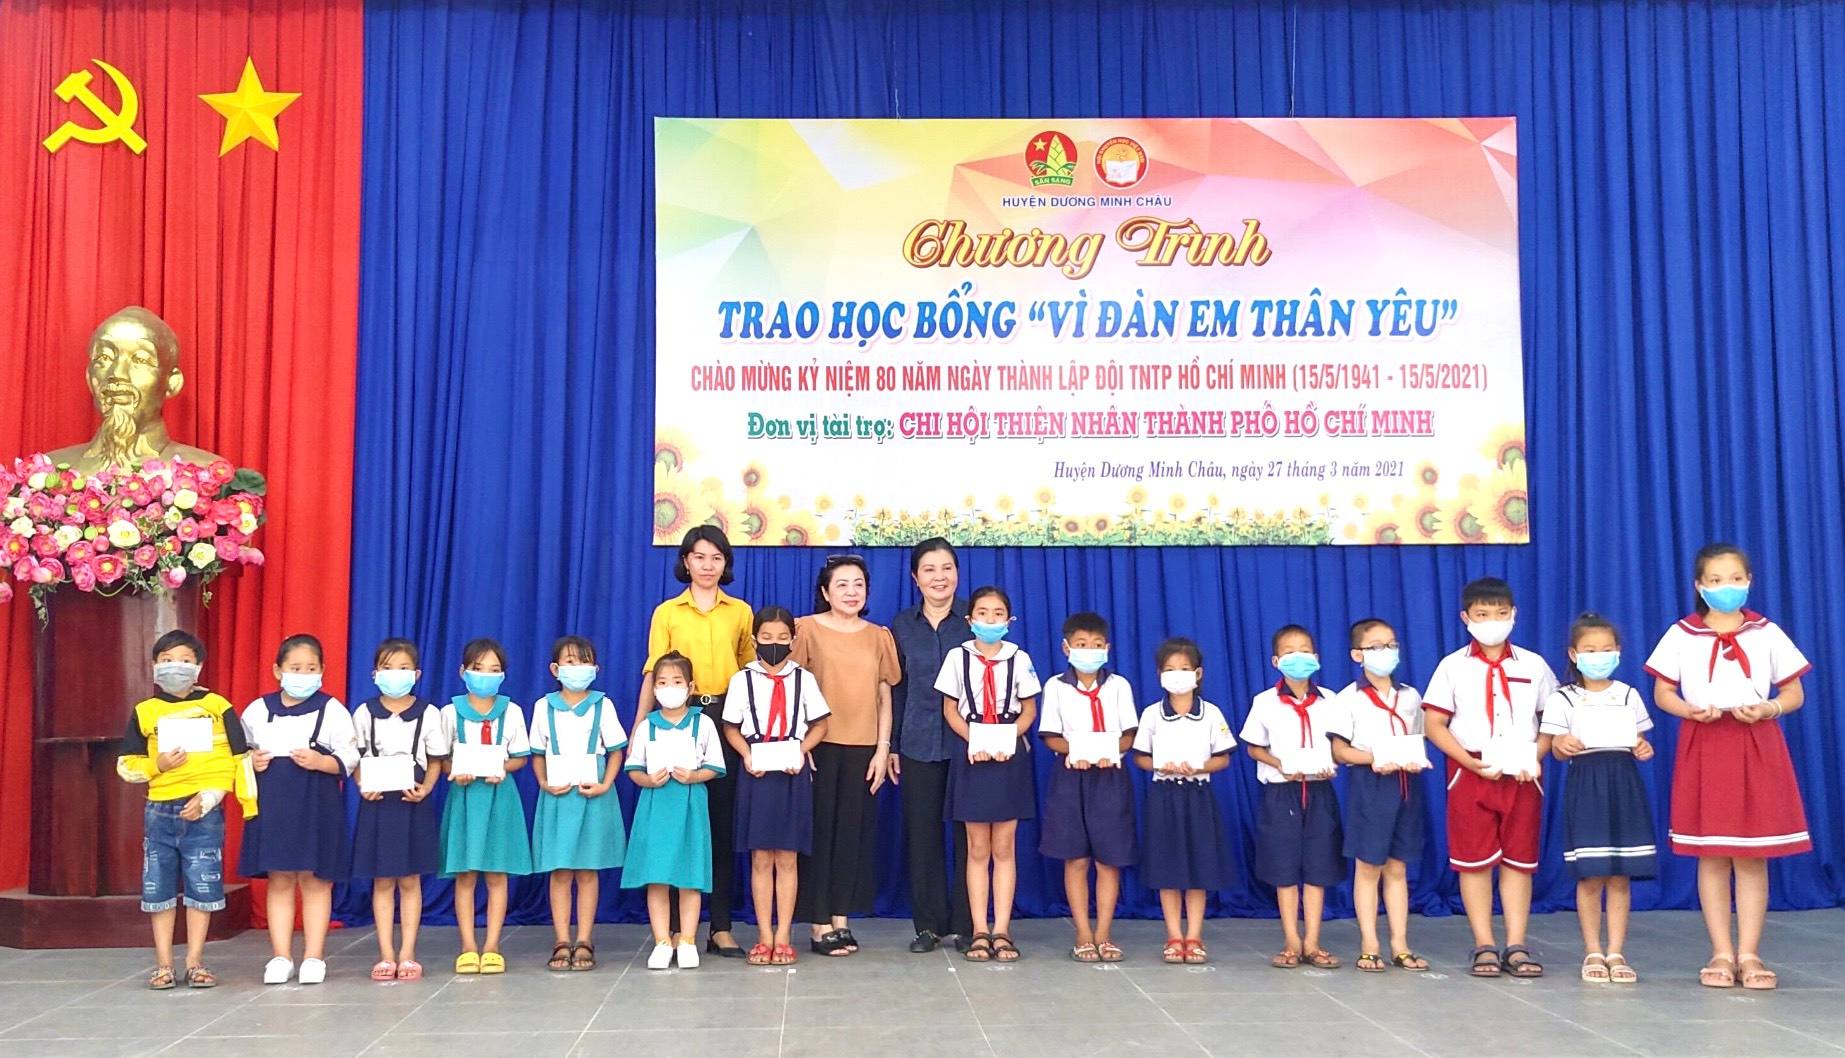 Huyện Dương Minh Châu: Trao học bổng và trao nhà nhân ái hơn 100 triệu đồng